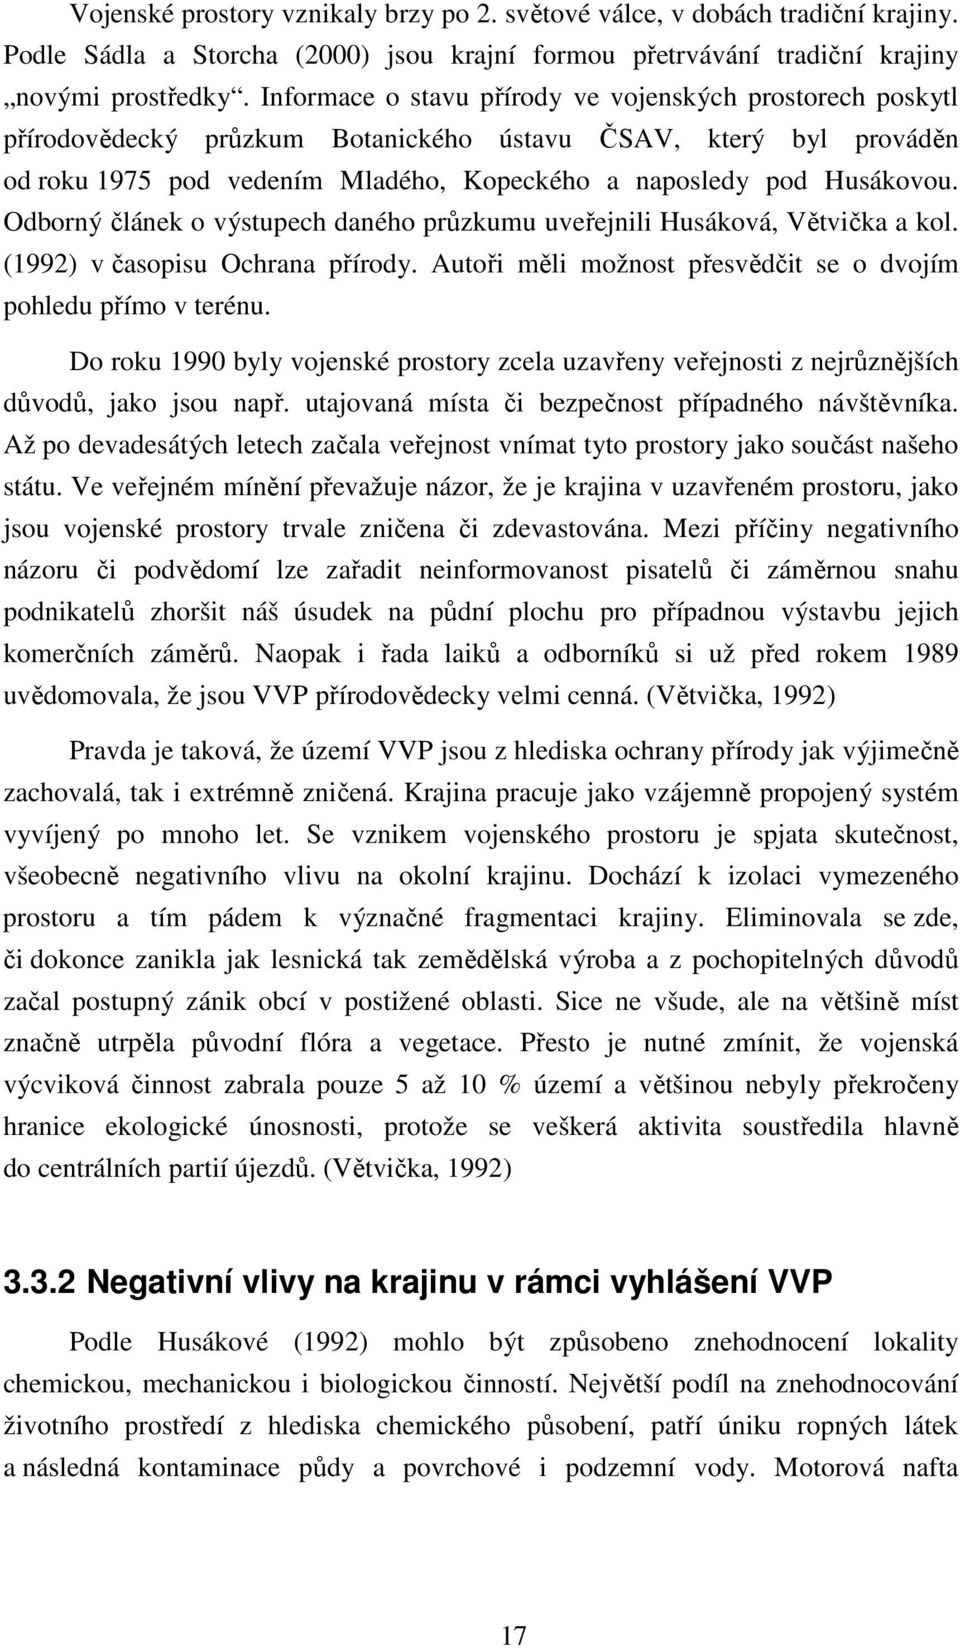 Odborný článek o výstupech daného průzkumu uveřejnili Husáková, Větvička a kol. (1992) v časopisu Ochrana přírody. Autoři měli možnost přesvědčit se o dvojím pohledu přímo v terénu.